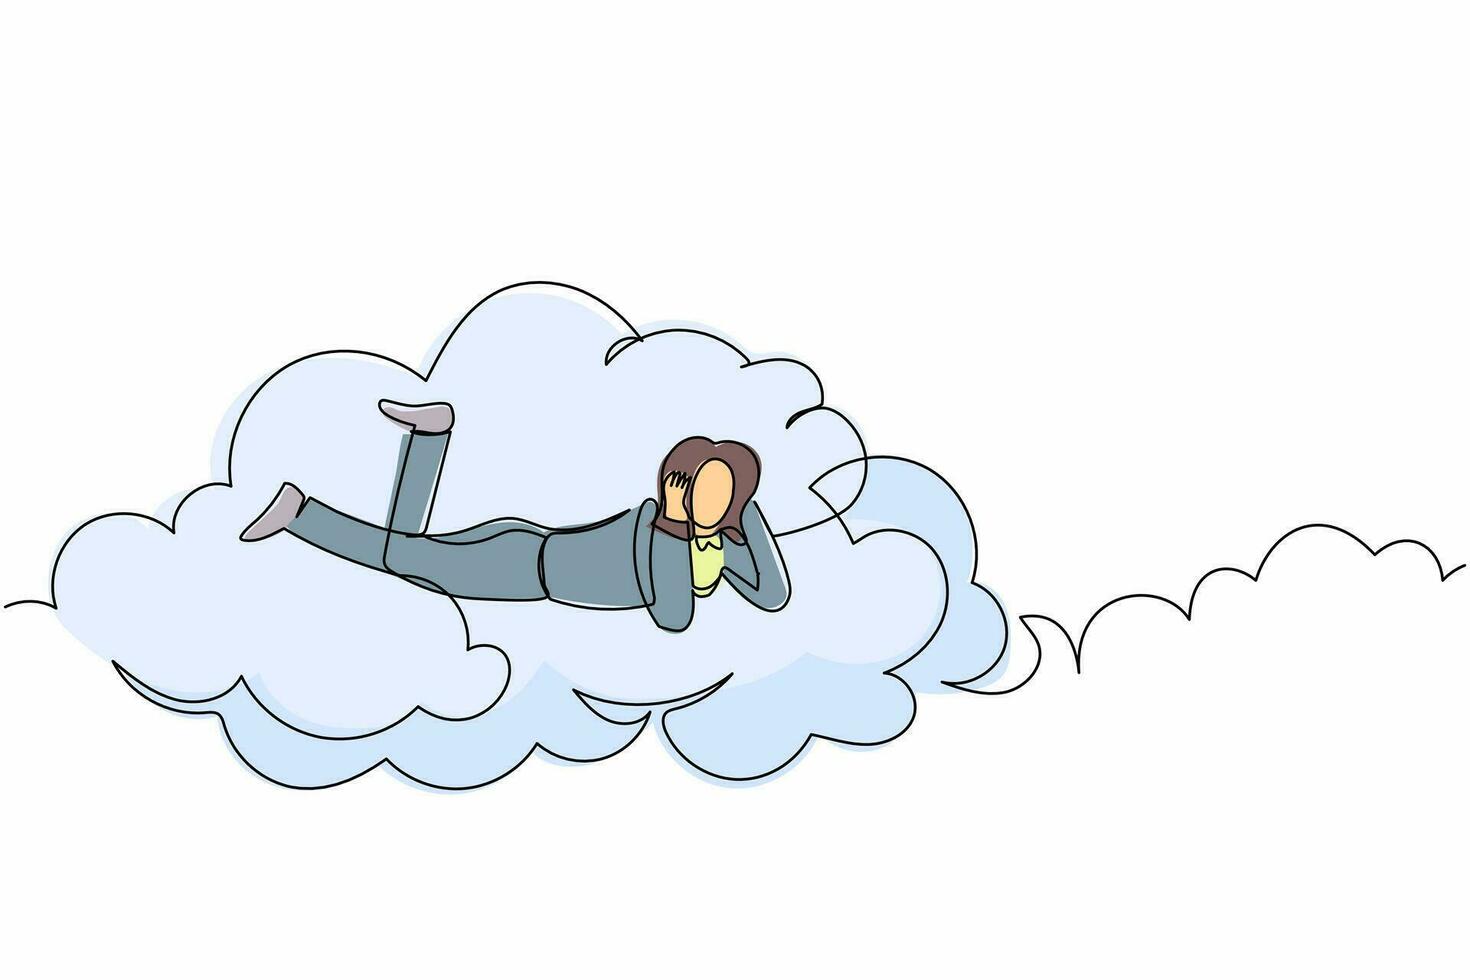 uma empresária sonhadora de desenho de linha contínua estava nas nuvens e sonhando ou pensando em um novo projeto de negócios. fêmea descansando depois do trabalho. ilustração gráfica de vetor de desenho de linha única